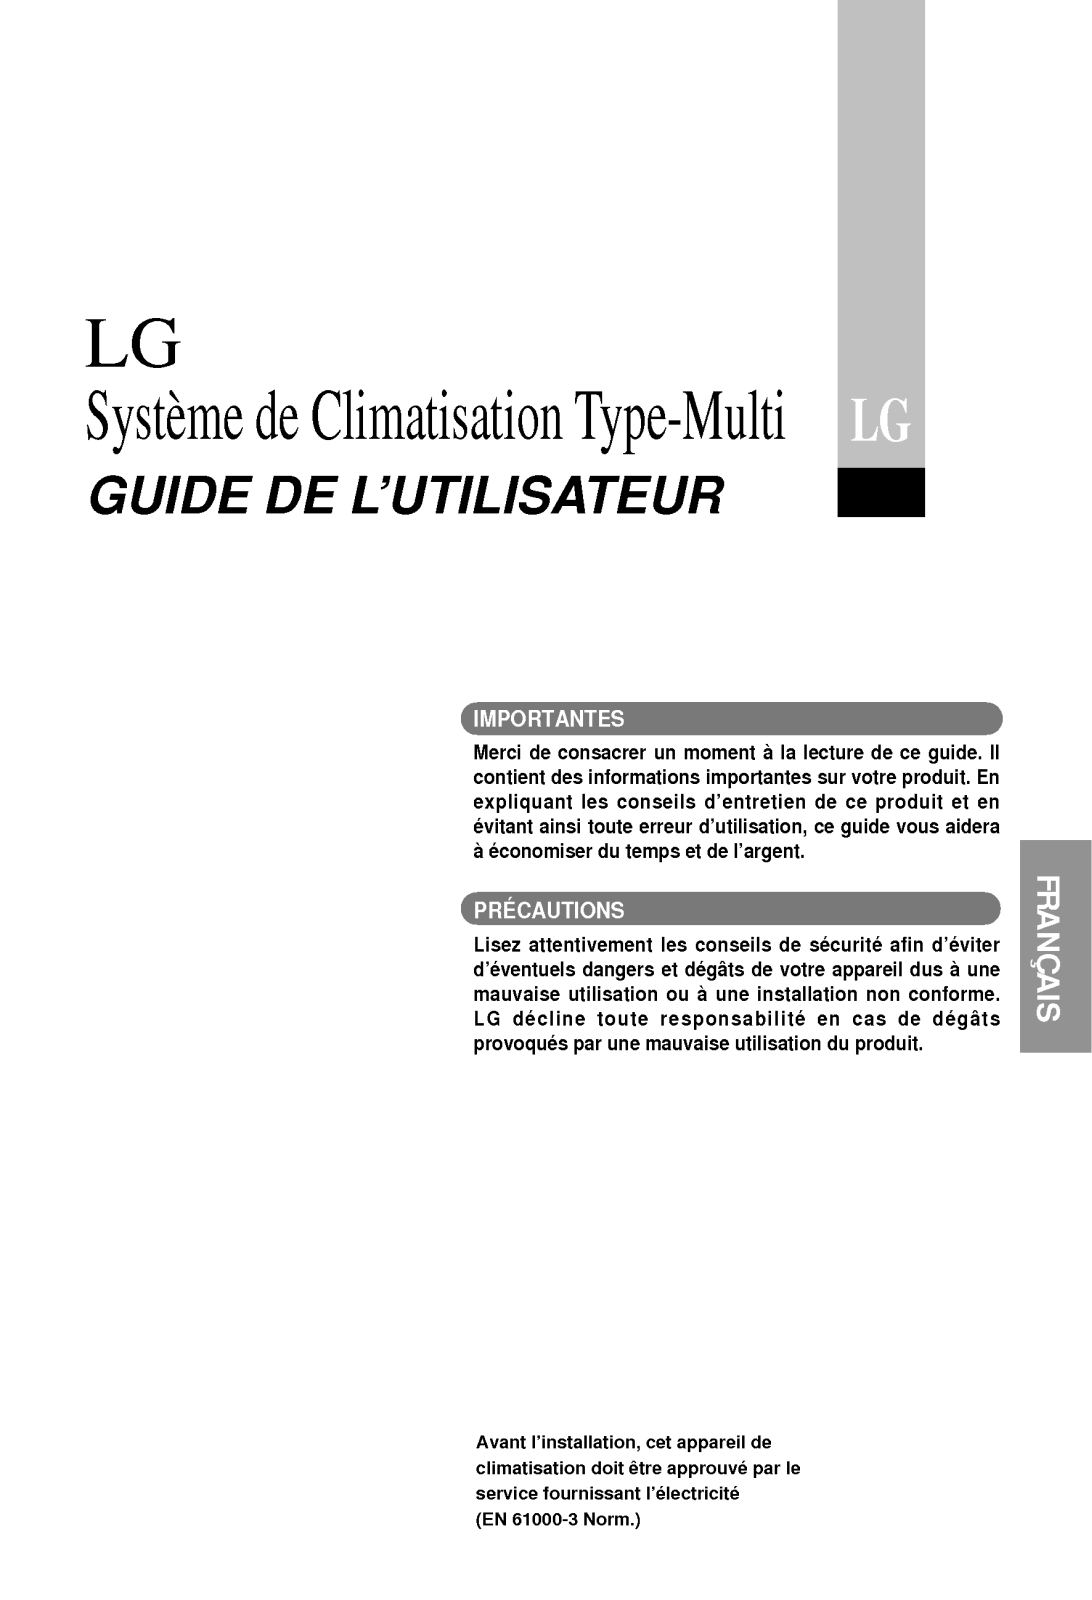 LG A2-H146LA0, A2-C196LA0, M14AH UD0 Manual